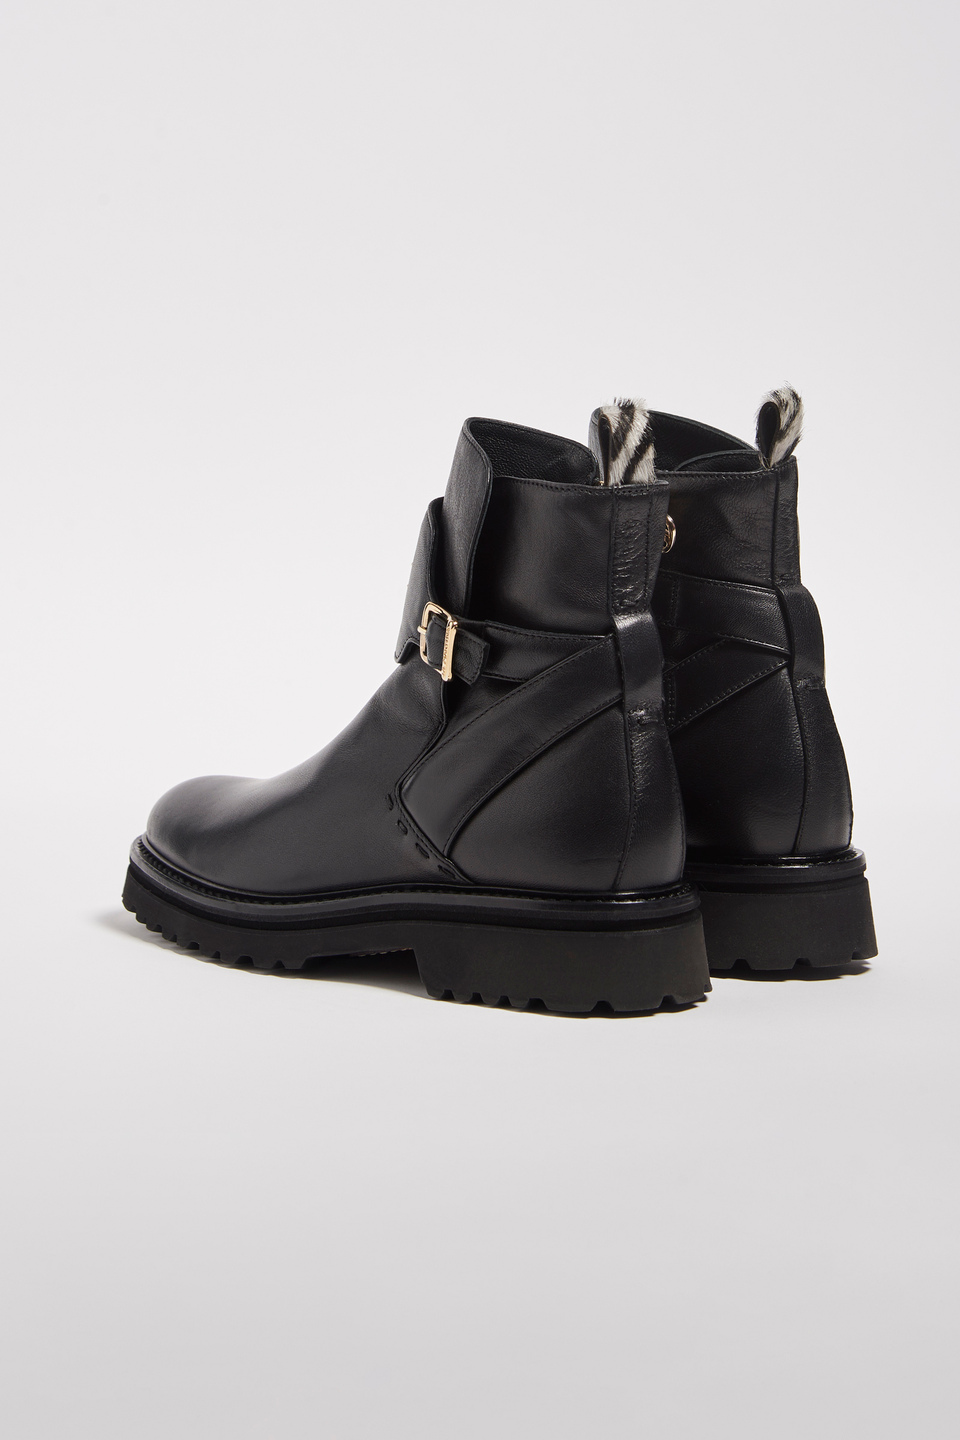 Brushed leather desert boots - La Martina - Official Online Shop